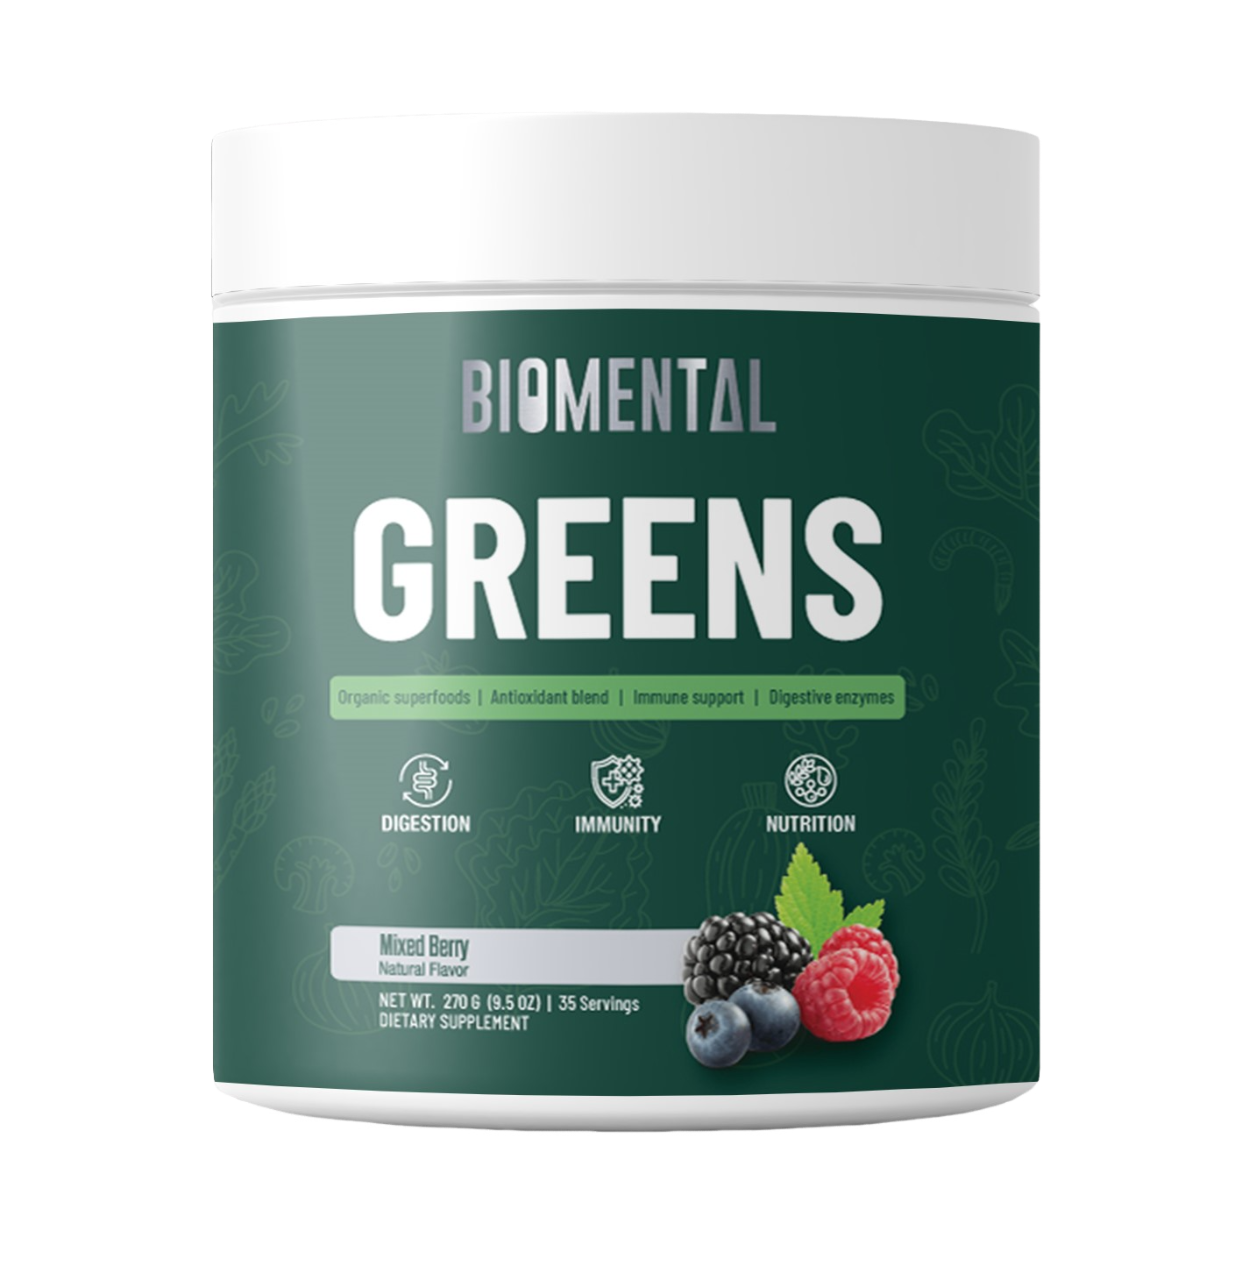 greens powder supplement,